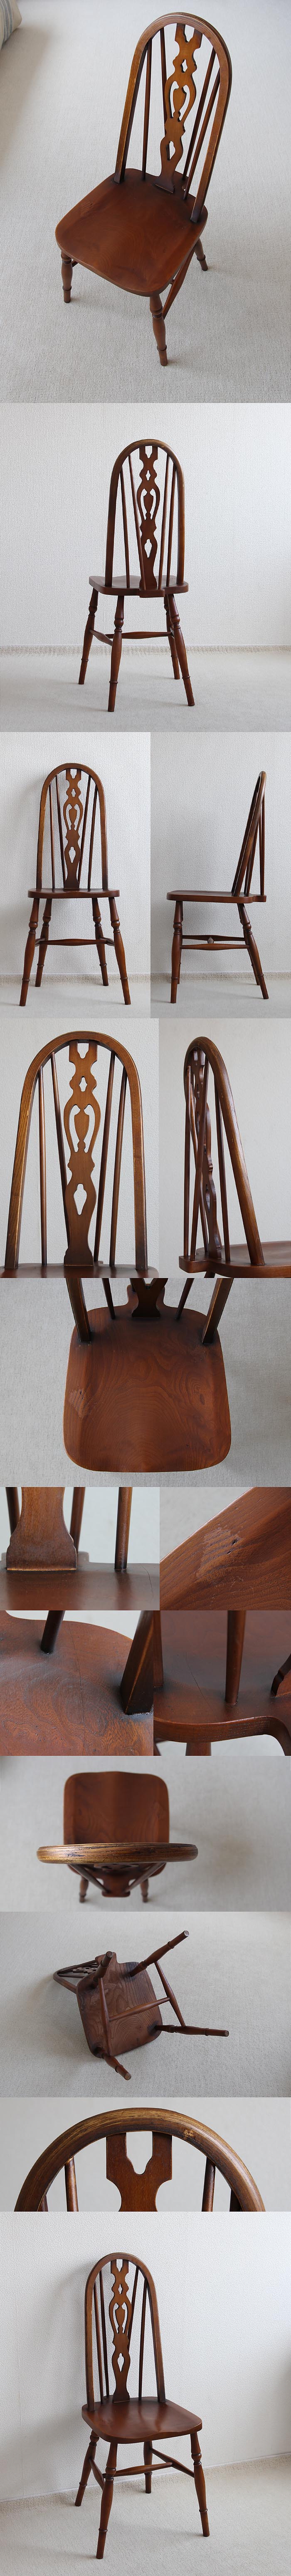 イギリス アンティーク調 ハイバックチェア 木製椅子 ダイニングチェア 家具「ウィンザースタイル」V-763